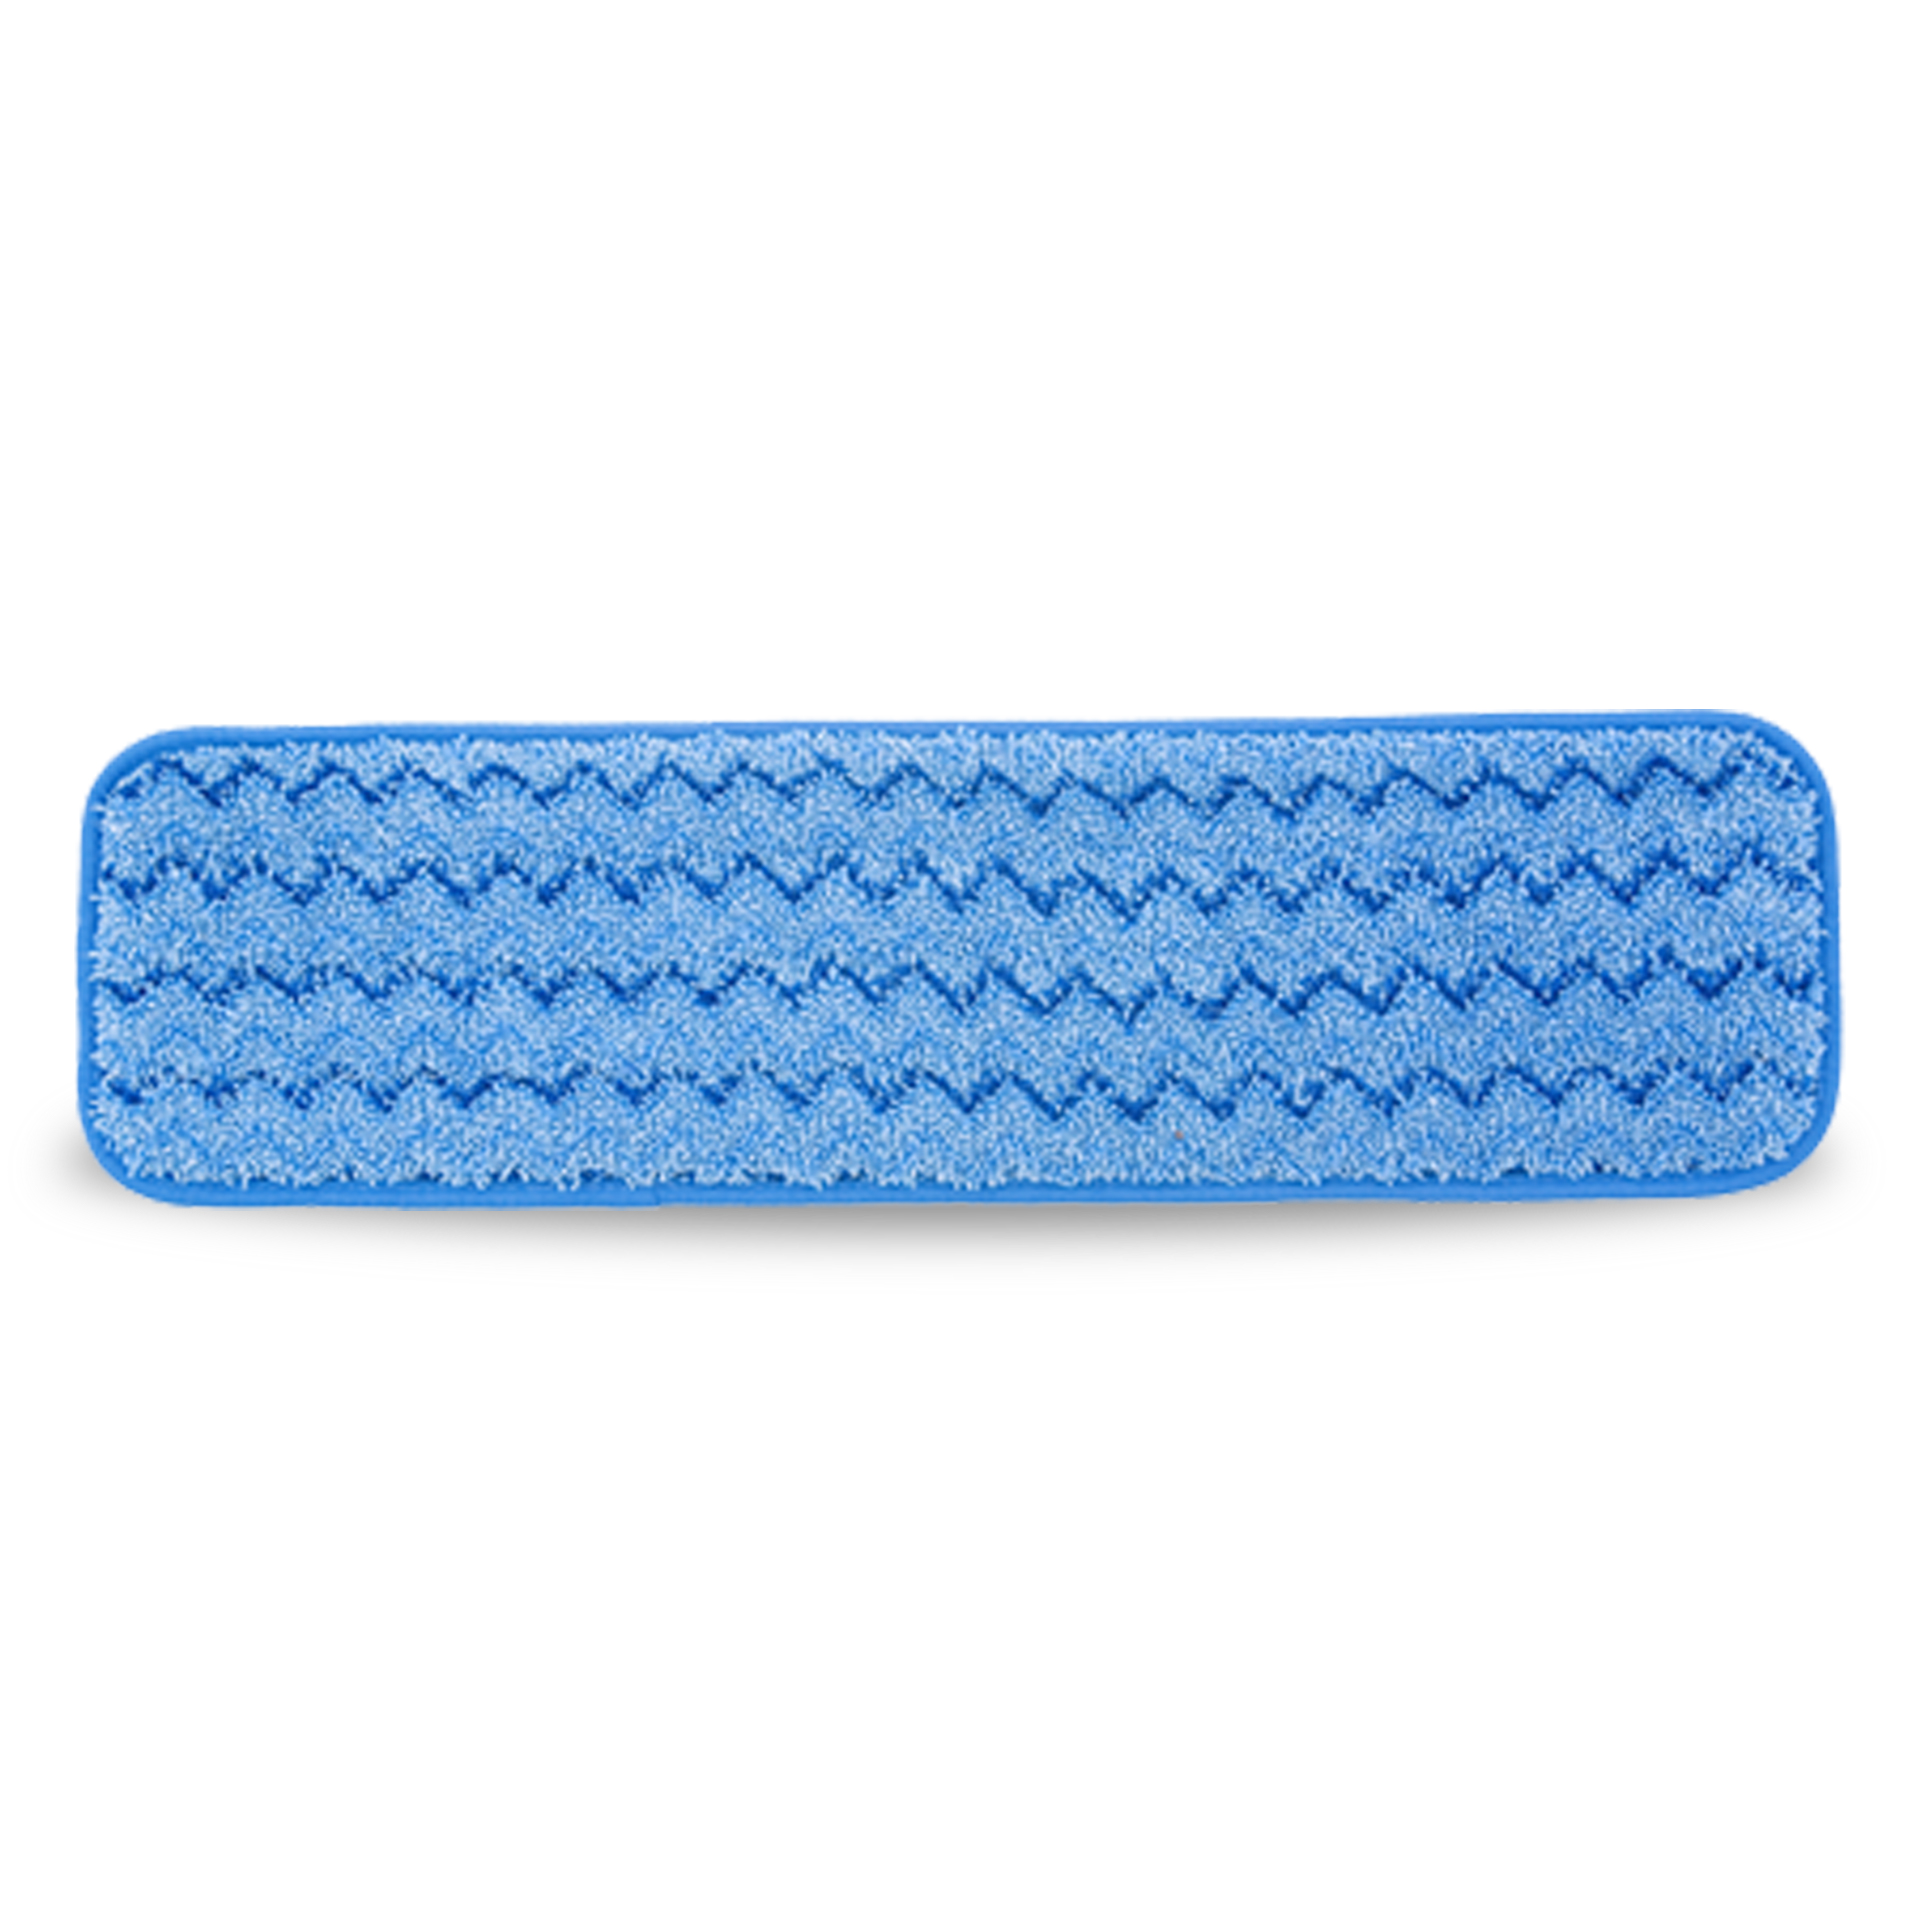 ผ้าไมโครไฟเบอร์สำหรับถูพื้น HYGEN™ Microfiber Wet Pad ขนาด 18 นิ้ว สีน้ำเงิน